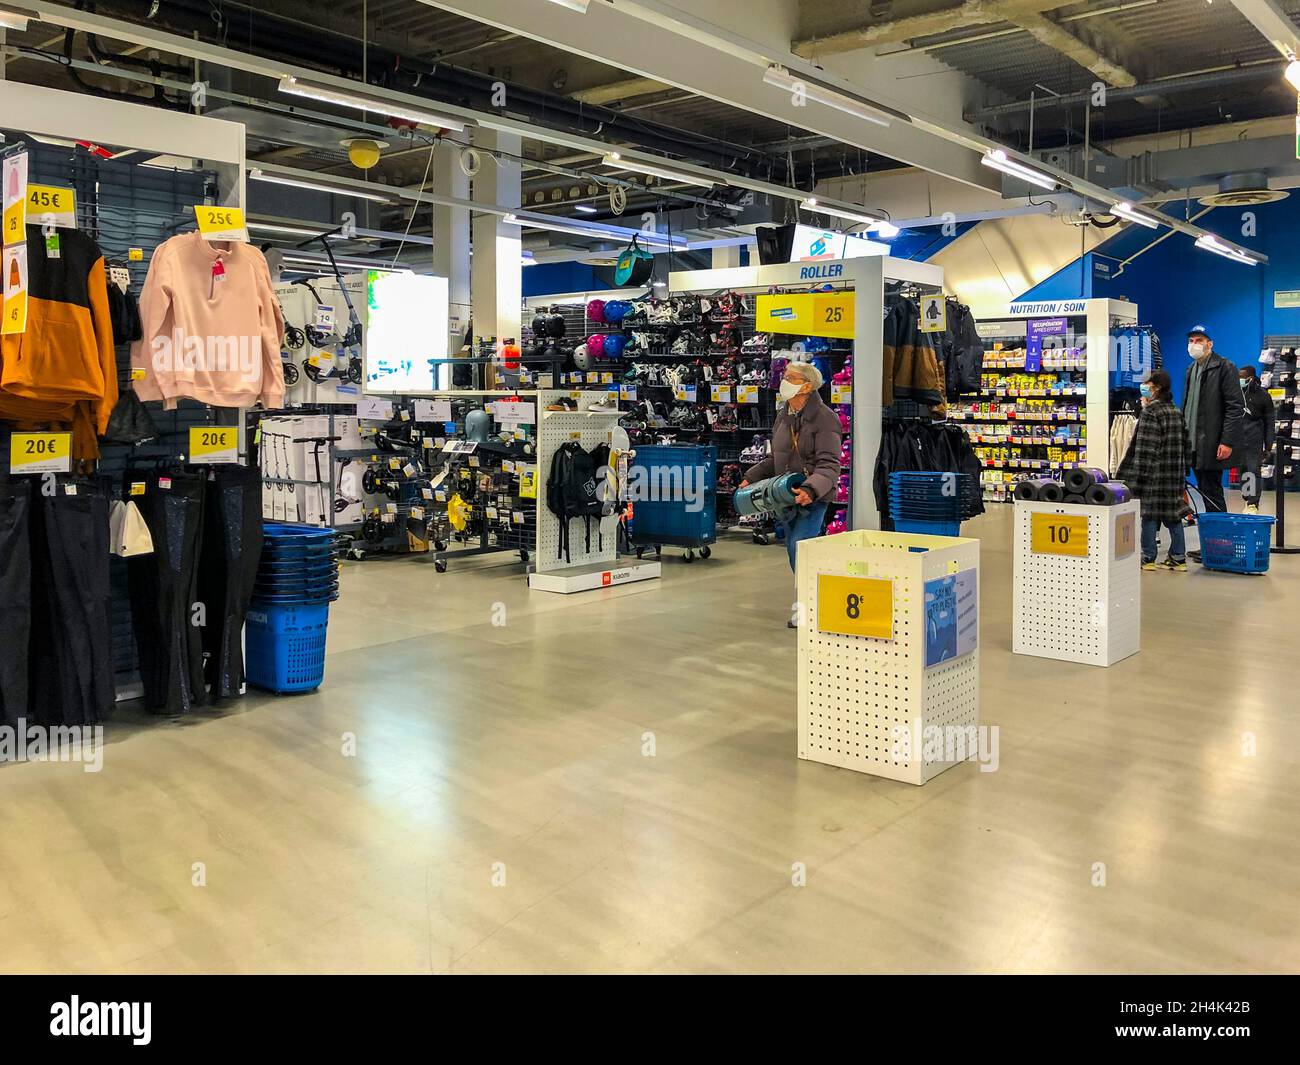 Paris, France, People Shopping dans le magasin de sport, à l'intérieur en utilisant les machines de paiement automatique Decathlon Rive gauche, intérieurs modernes Banque D'Images